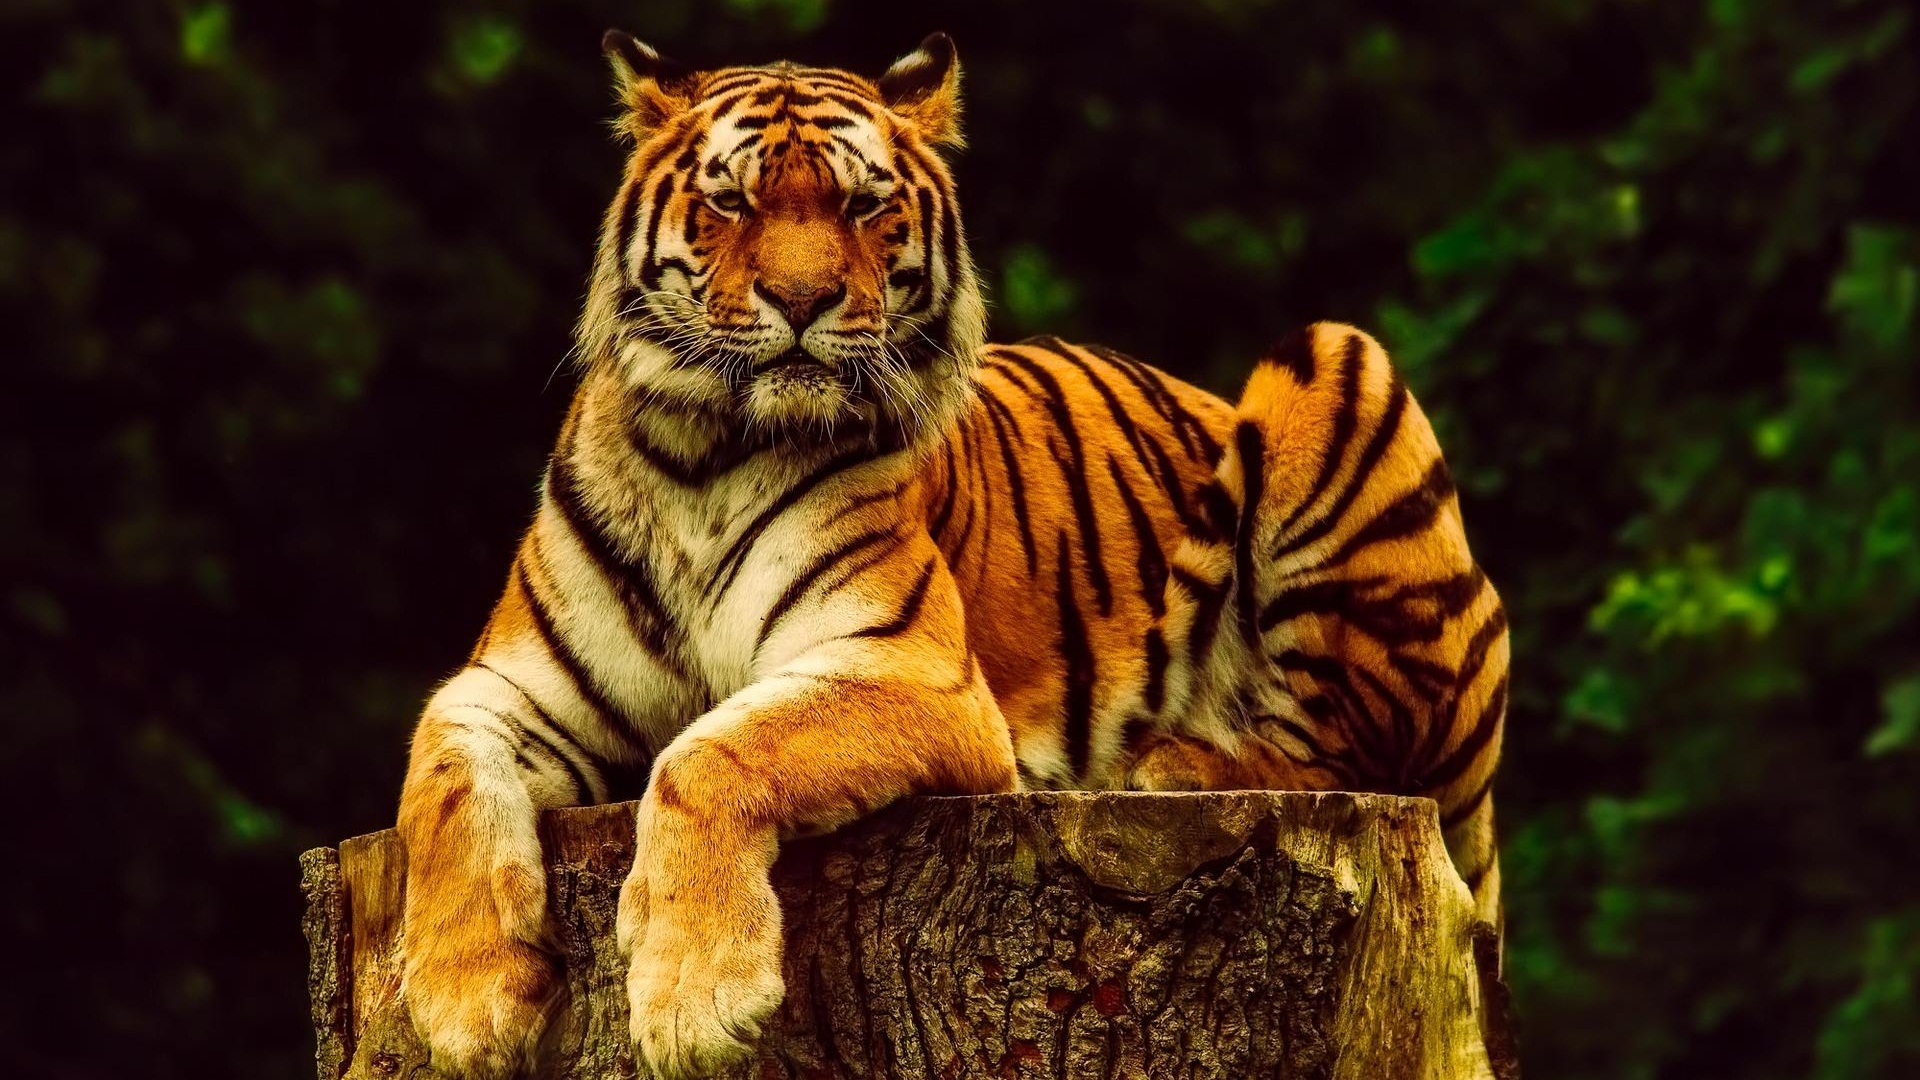 Resting Tiger Background Wallpaper 